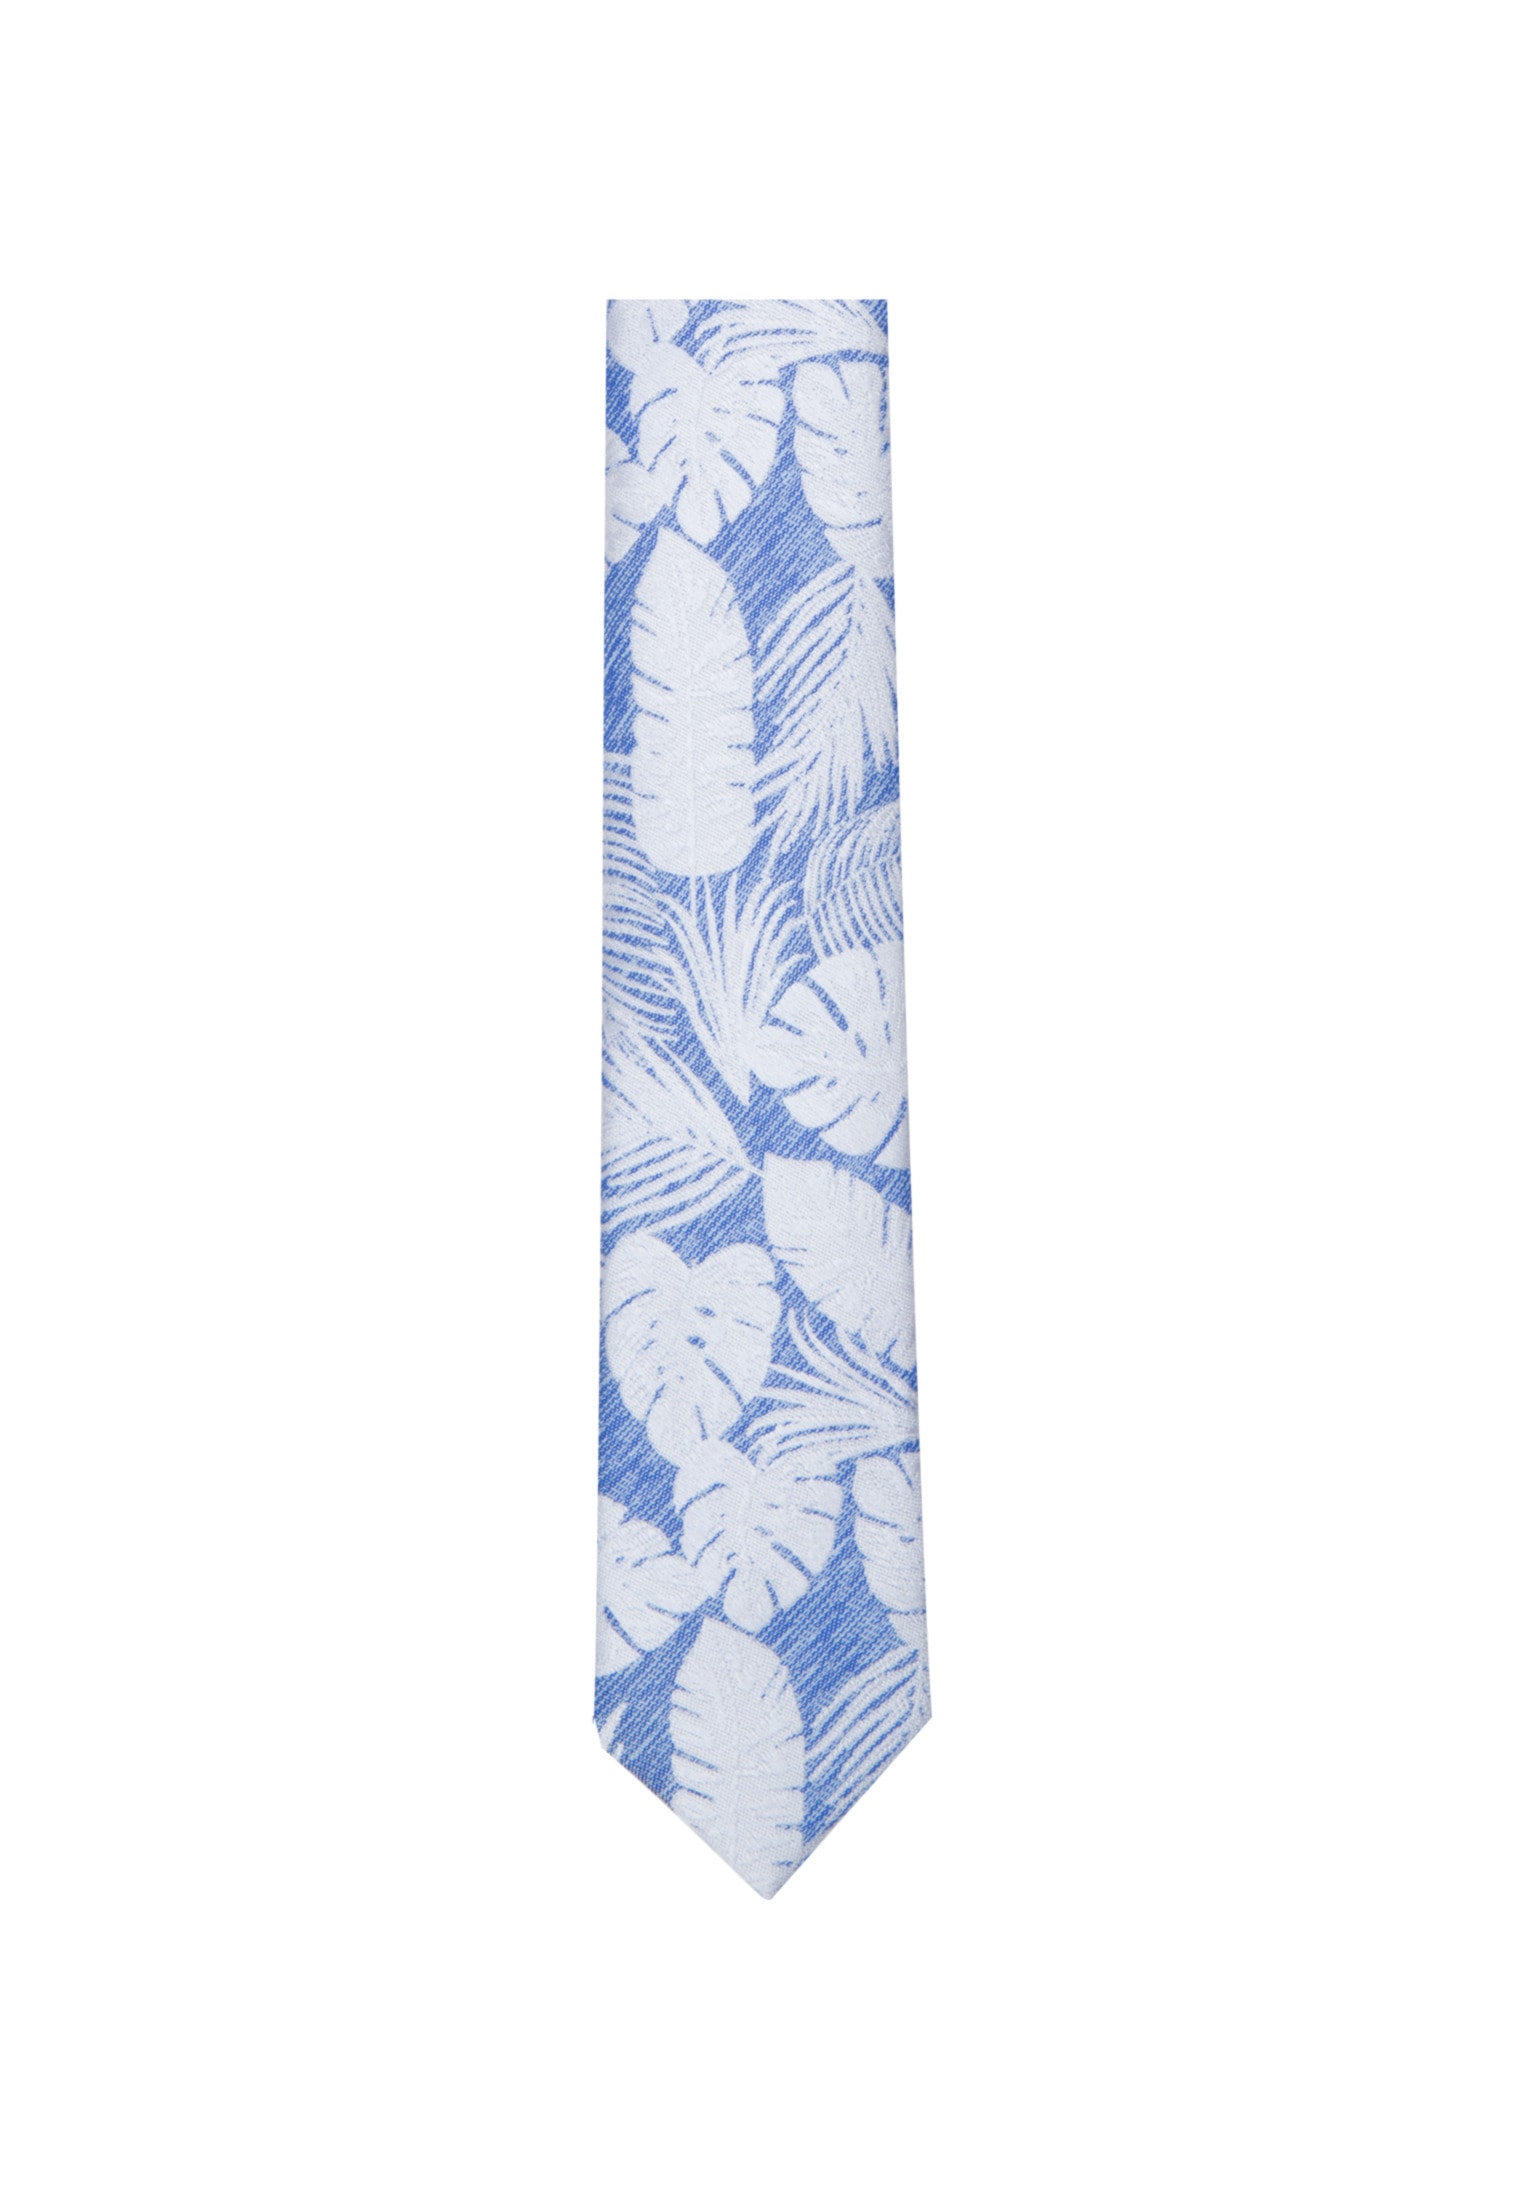 Blaue Krawatten kaufen ▷ Hellblau & Dunkelblau | BAUR